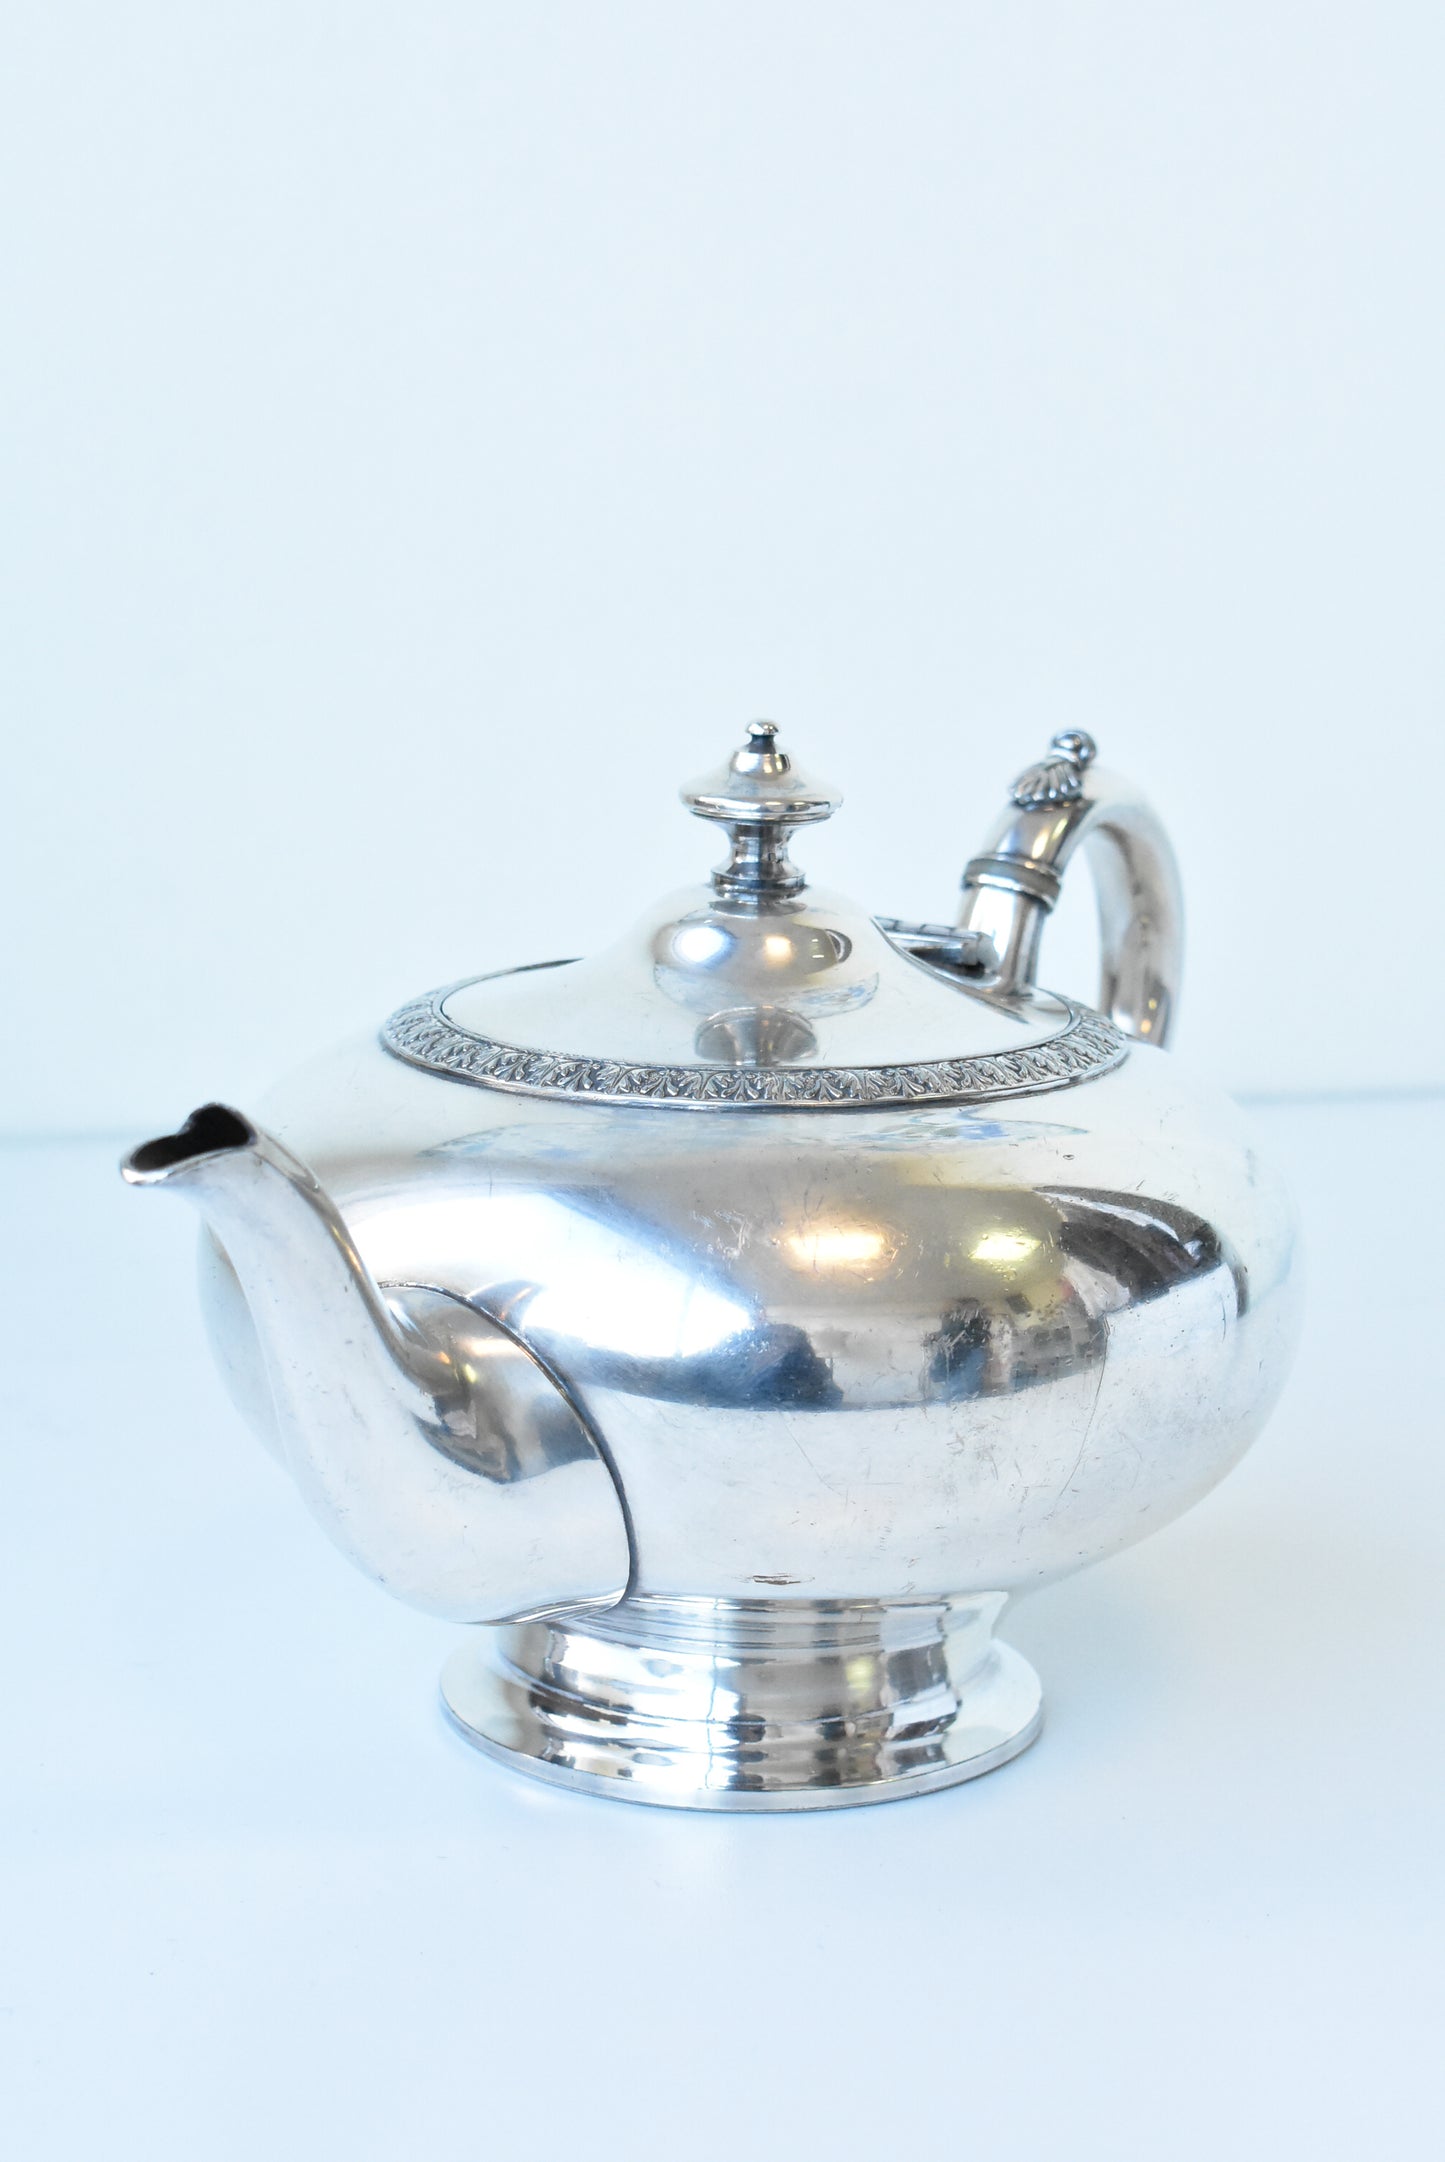 Stewart Dawson vintage silver-plated teapot